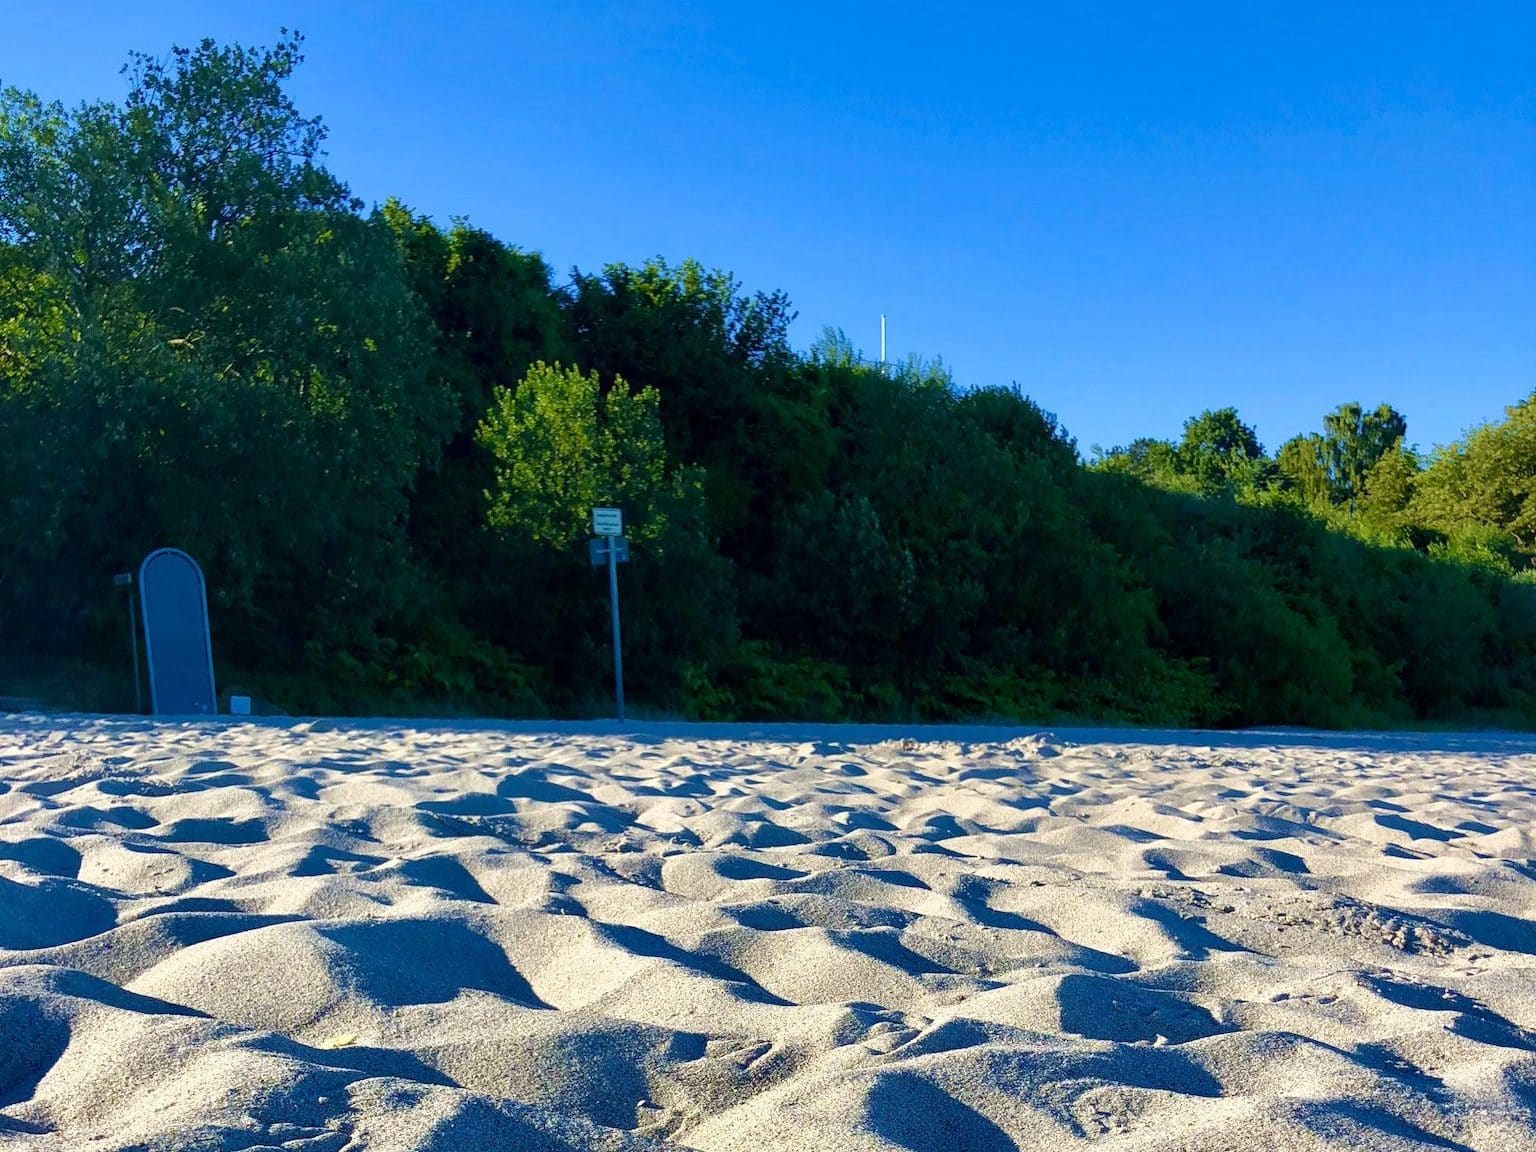 Arena blanca y fina: la playa de Sierksdorf es una maravillosa playa de arena. Foto: Sascha Tegtmeyer